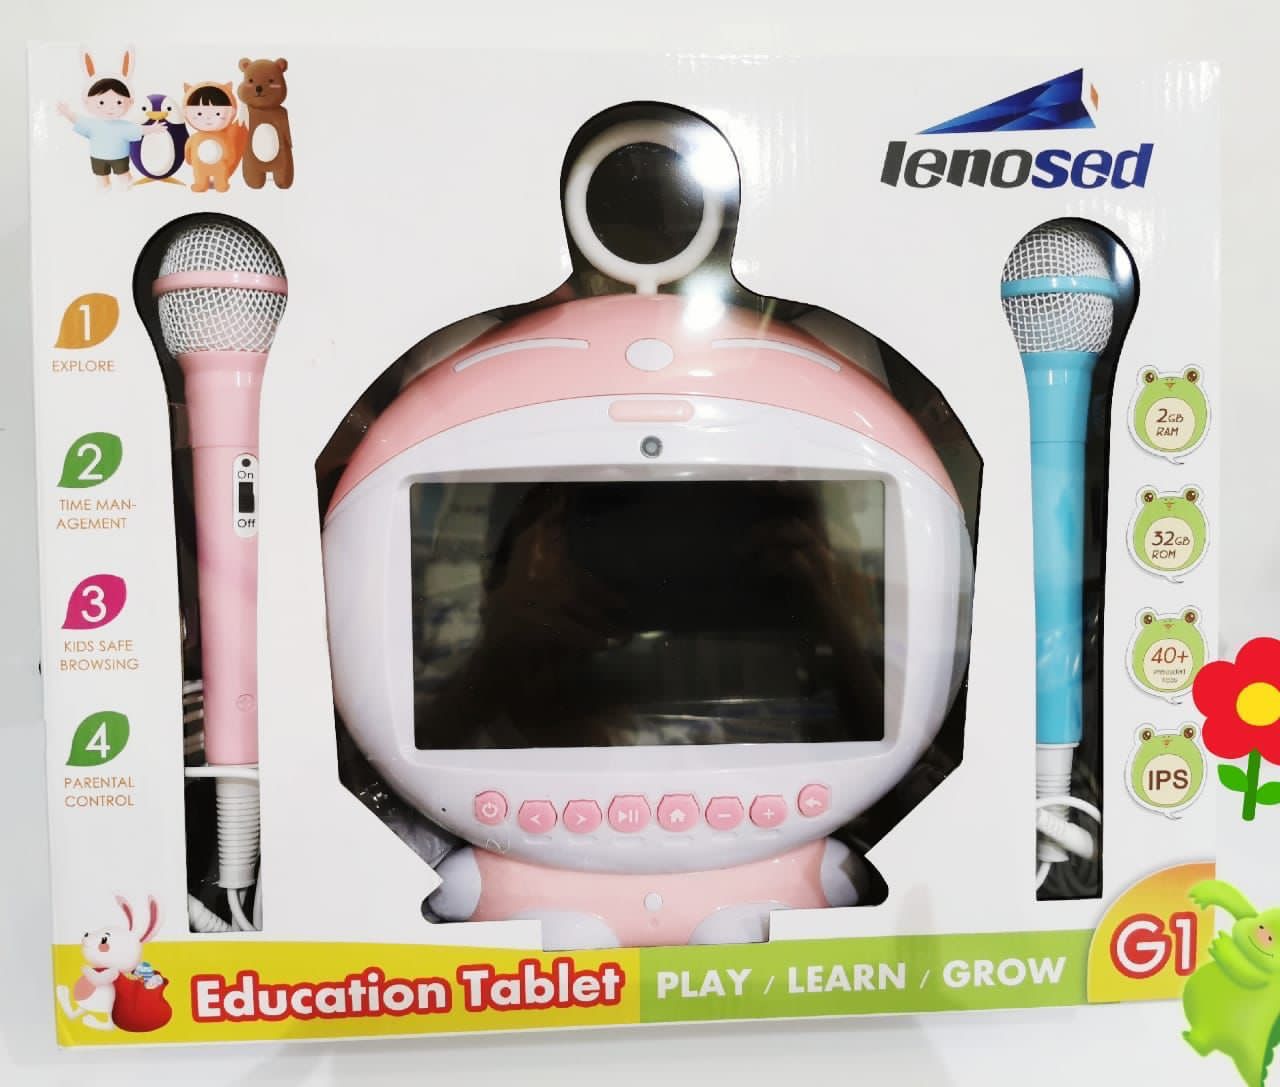 Tablette Educative pour Enfant De Marque Lenosed G1, Avec 2 Micro